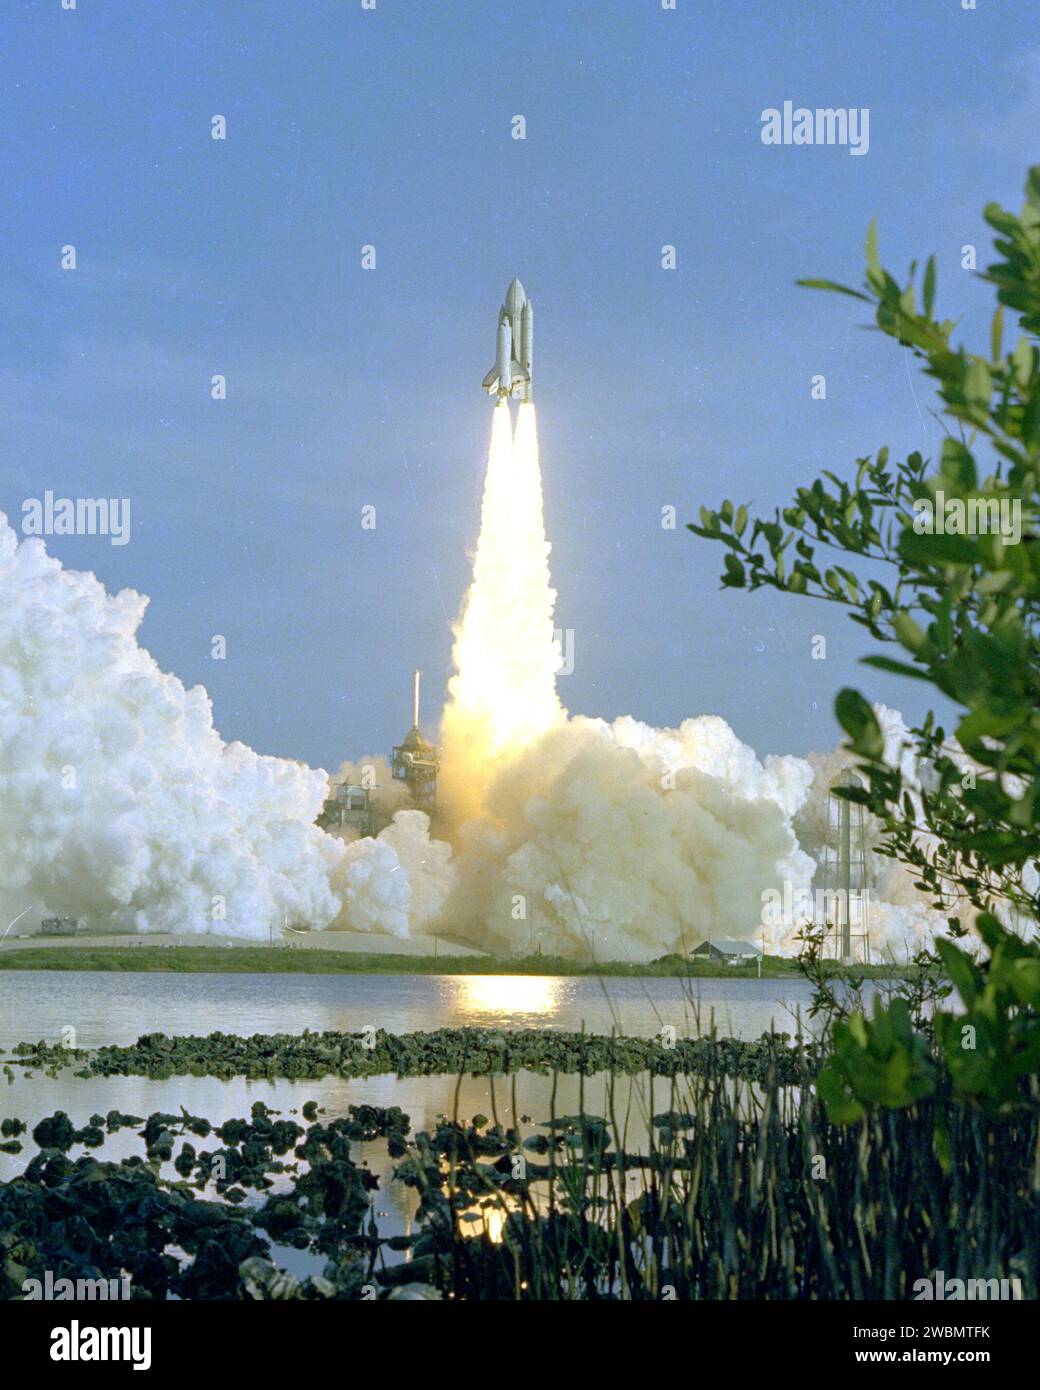 KENNEDY SPACE CENTER, FLA. - Lo Space Shuttle Columbia sorge dal Pad 39A pochi secondi dopo le 7 del mattino del 12 aprile 1981 - l'alba di una nuova era in volo spaziale. A bordo, gli astronauti John Young e Bob Crippen viaggiano verso l'orbita dopo il successo del decollo della prima missione dello Space Shuttle. I piani di missione prevedono che il Columbia rimanga in orbita per circa 54 ore, durante le quali gli astronauti Young e Criipen eseguiranno una serie di attività di checkout progettate per testare i sistemi dello Space Shuttle nello spazio per la prima volta. Il Columbia dovrebbe planare verso un atterraggio simile a un aereo a Edwards Foto Stock